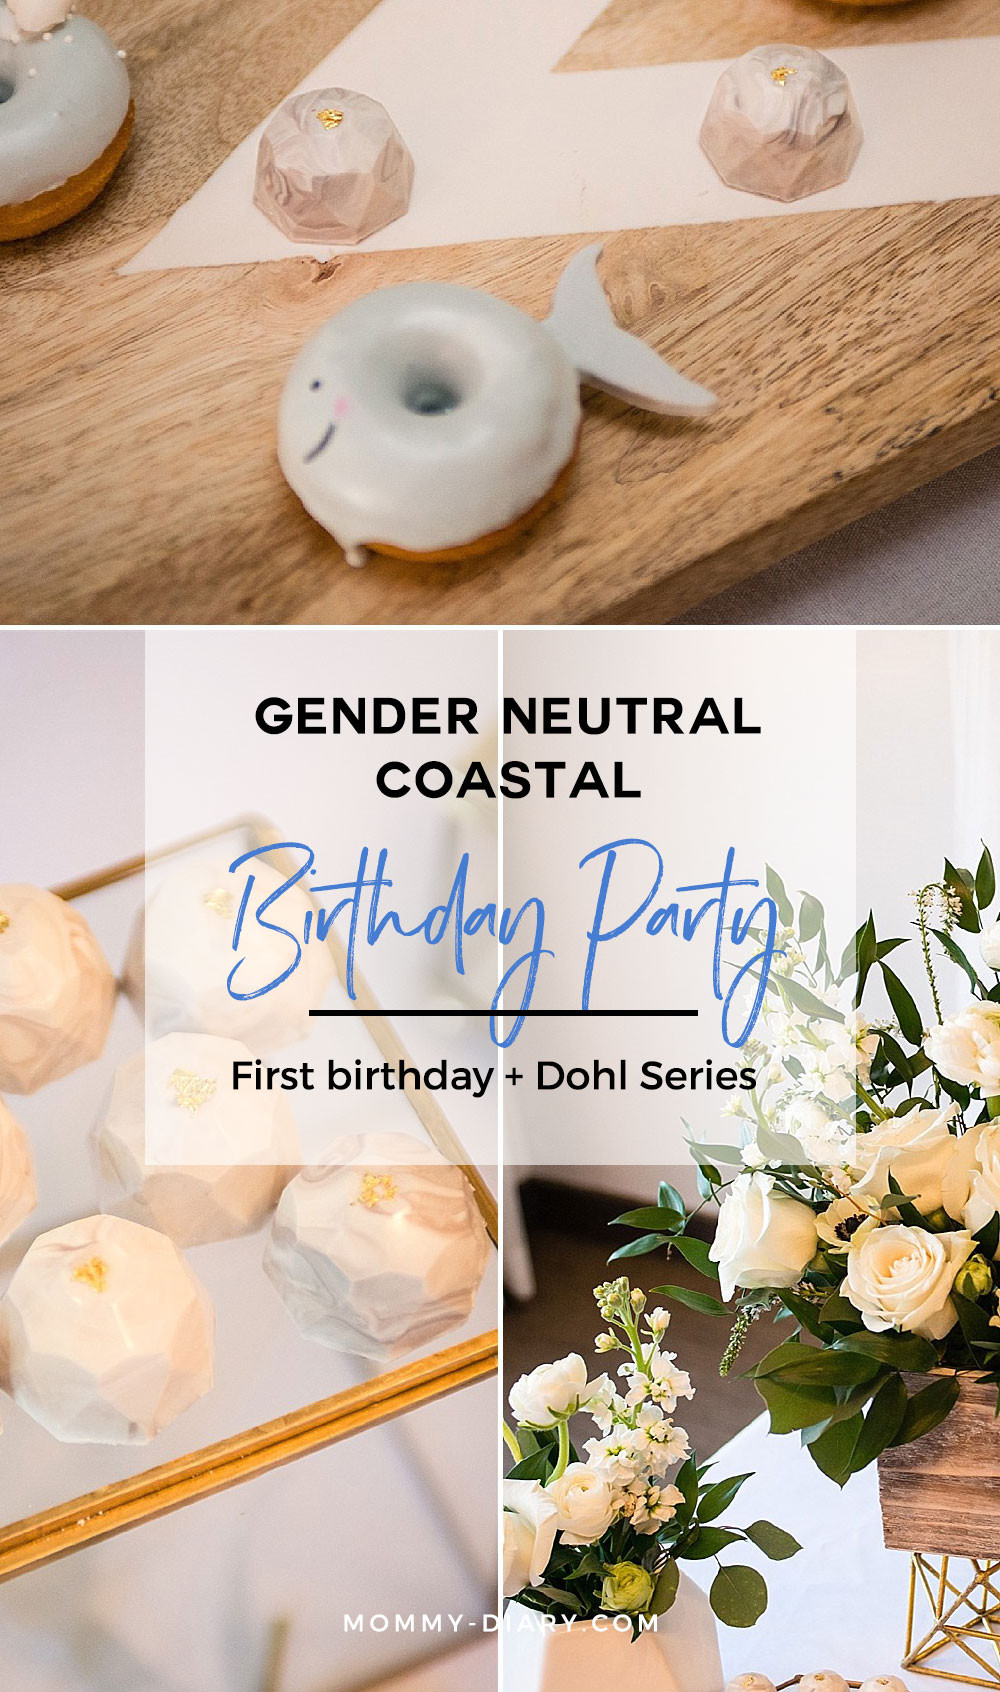 Gender Neutral Birthday Party Ideas
 Landon s Gender Neutral Coastal First Birthday